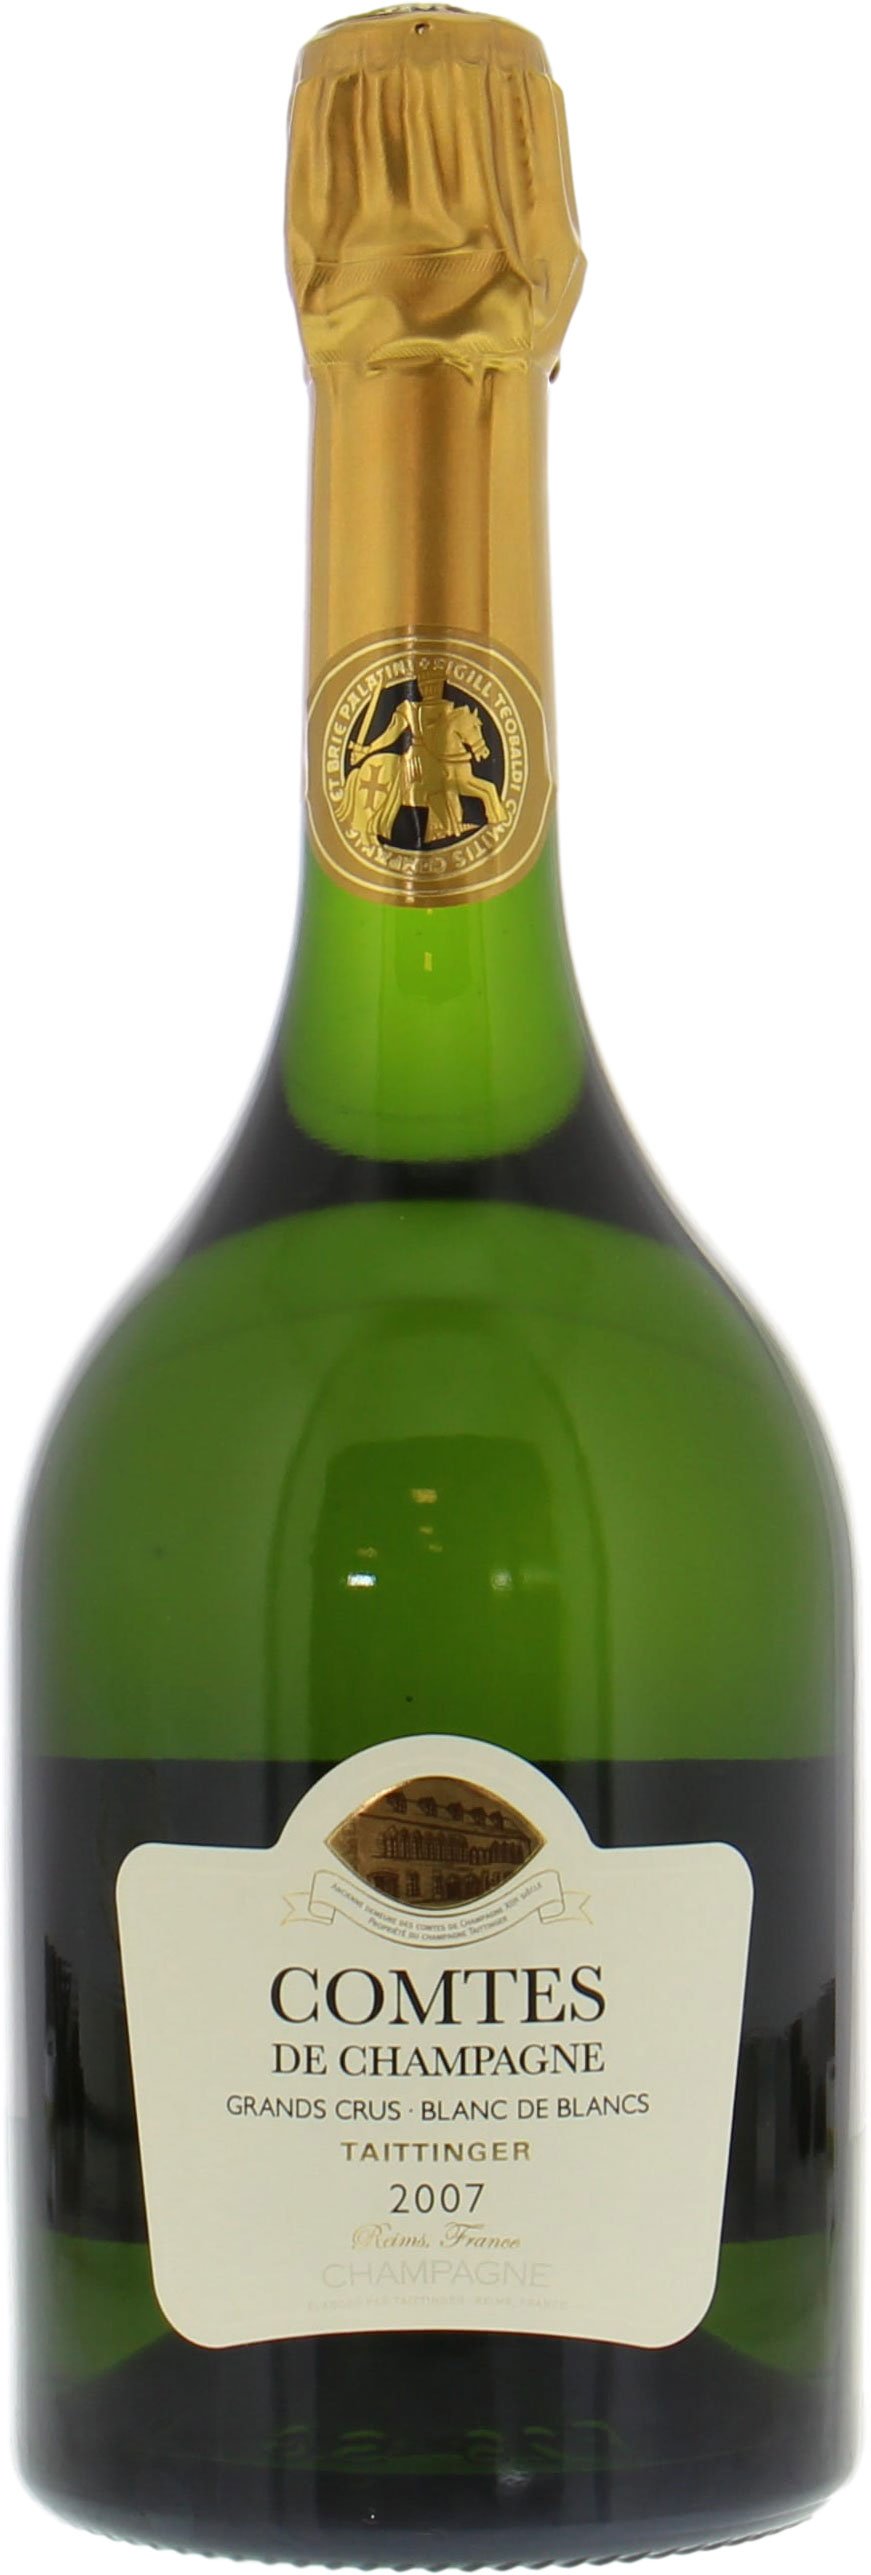 Taittinger - Comtes de Champagne Blanc de Blancs 2007 Perfect